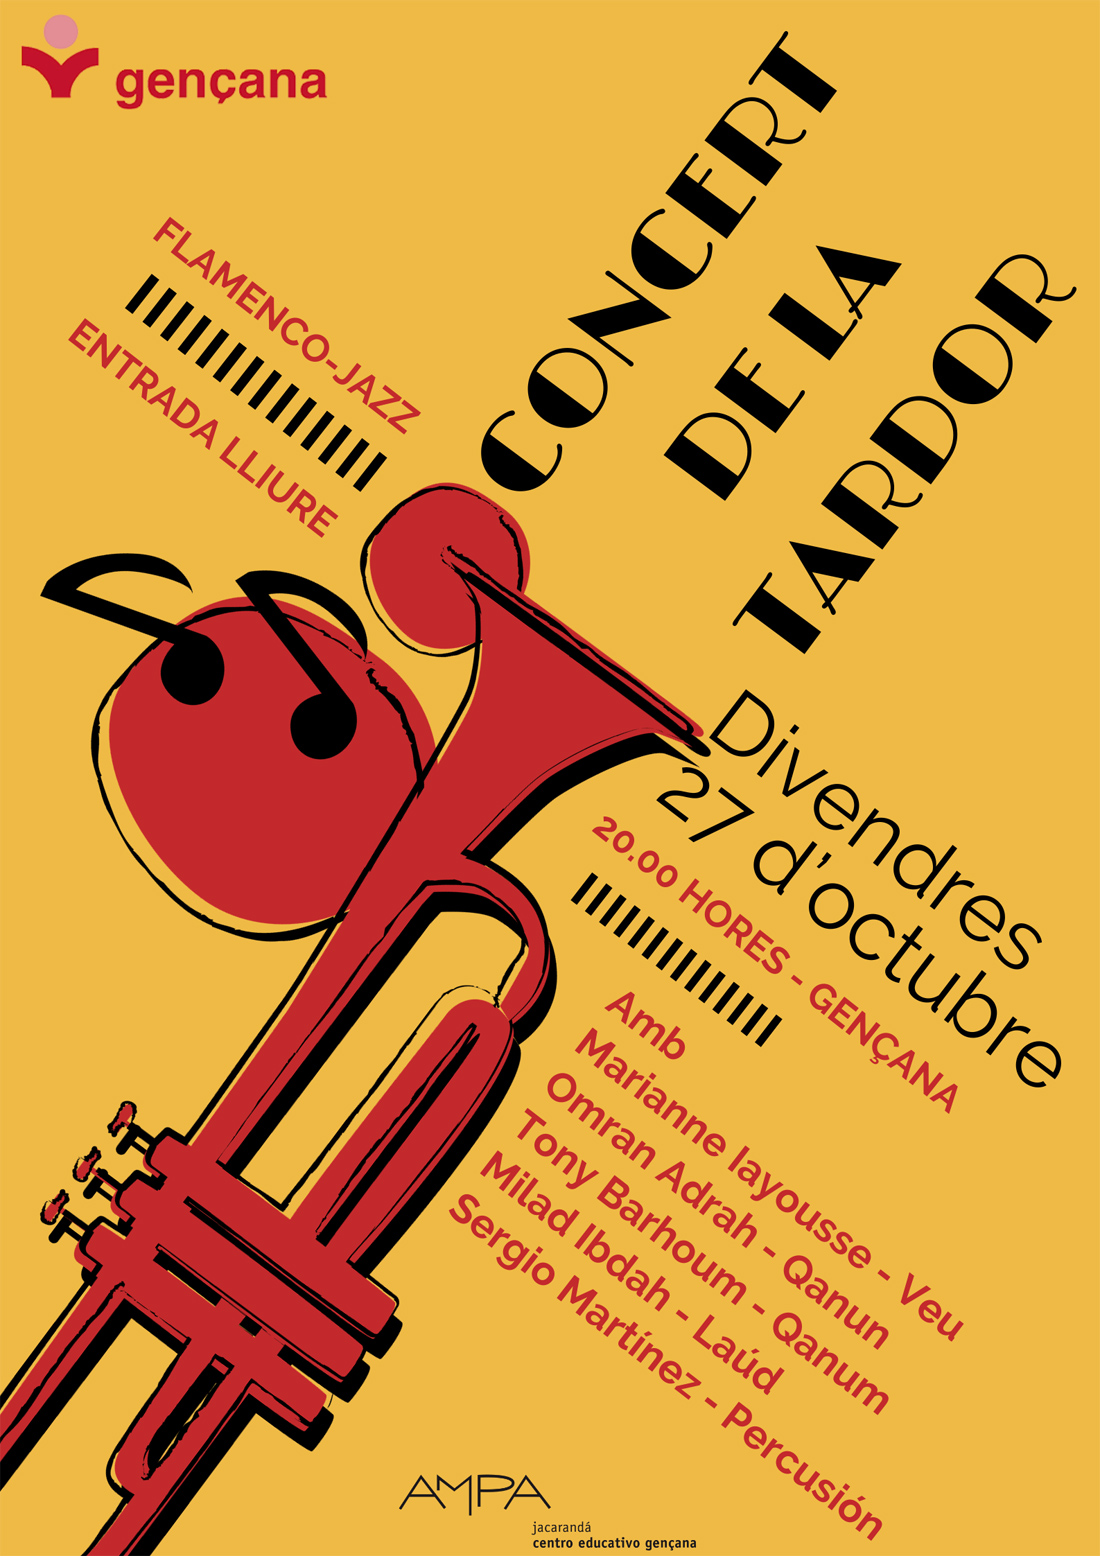 Concierto de flamenco jazz a cargo de Sergio Rodríguez. Viernes 27 de octubre a las 20.00 horas en el Centro Educativo Gençana. Entrada libre